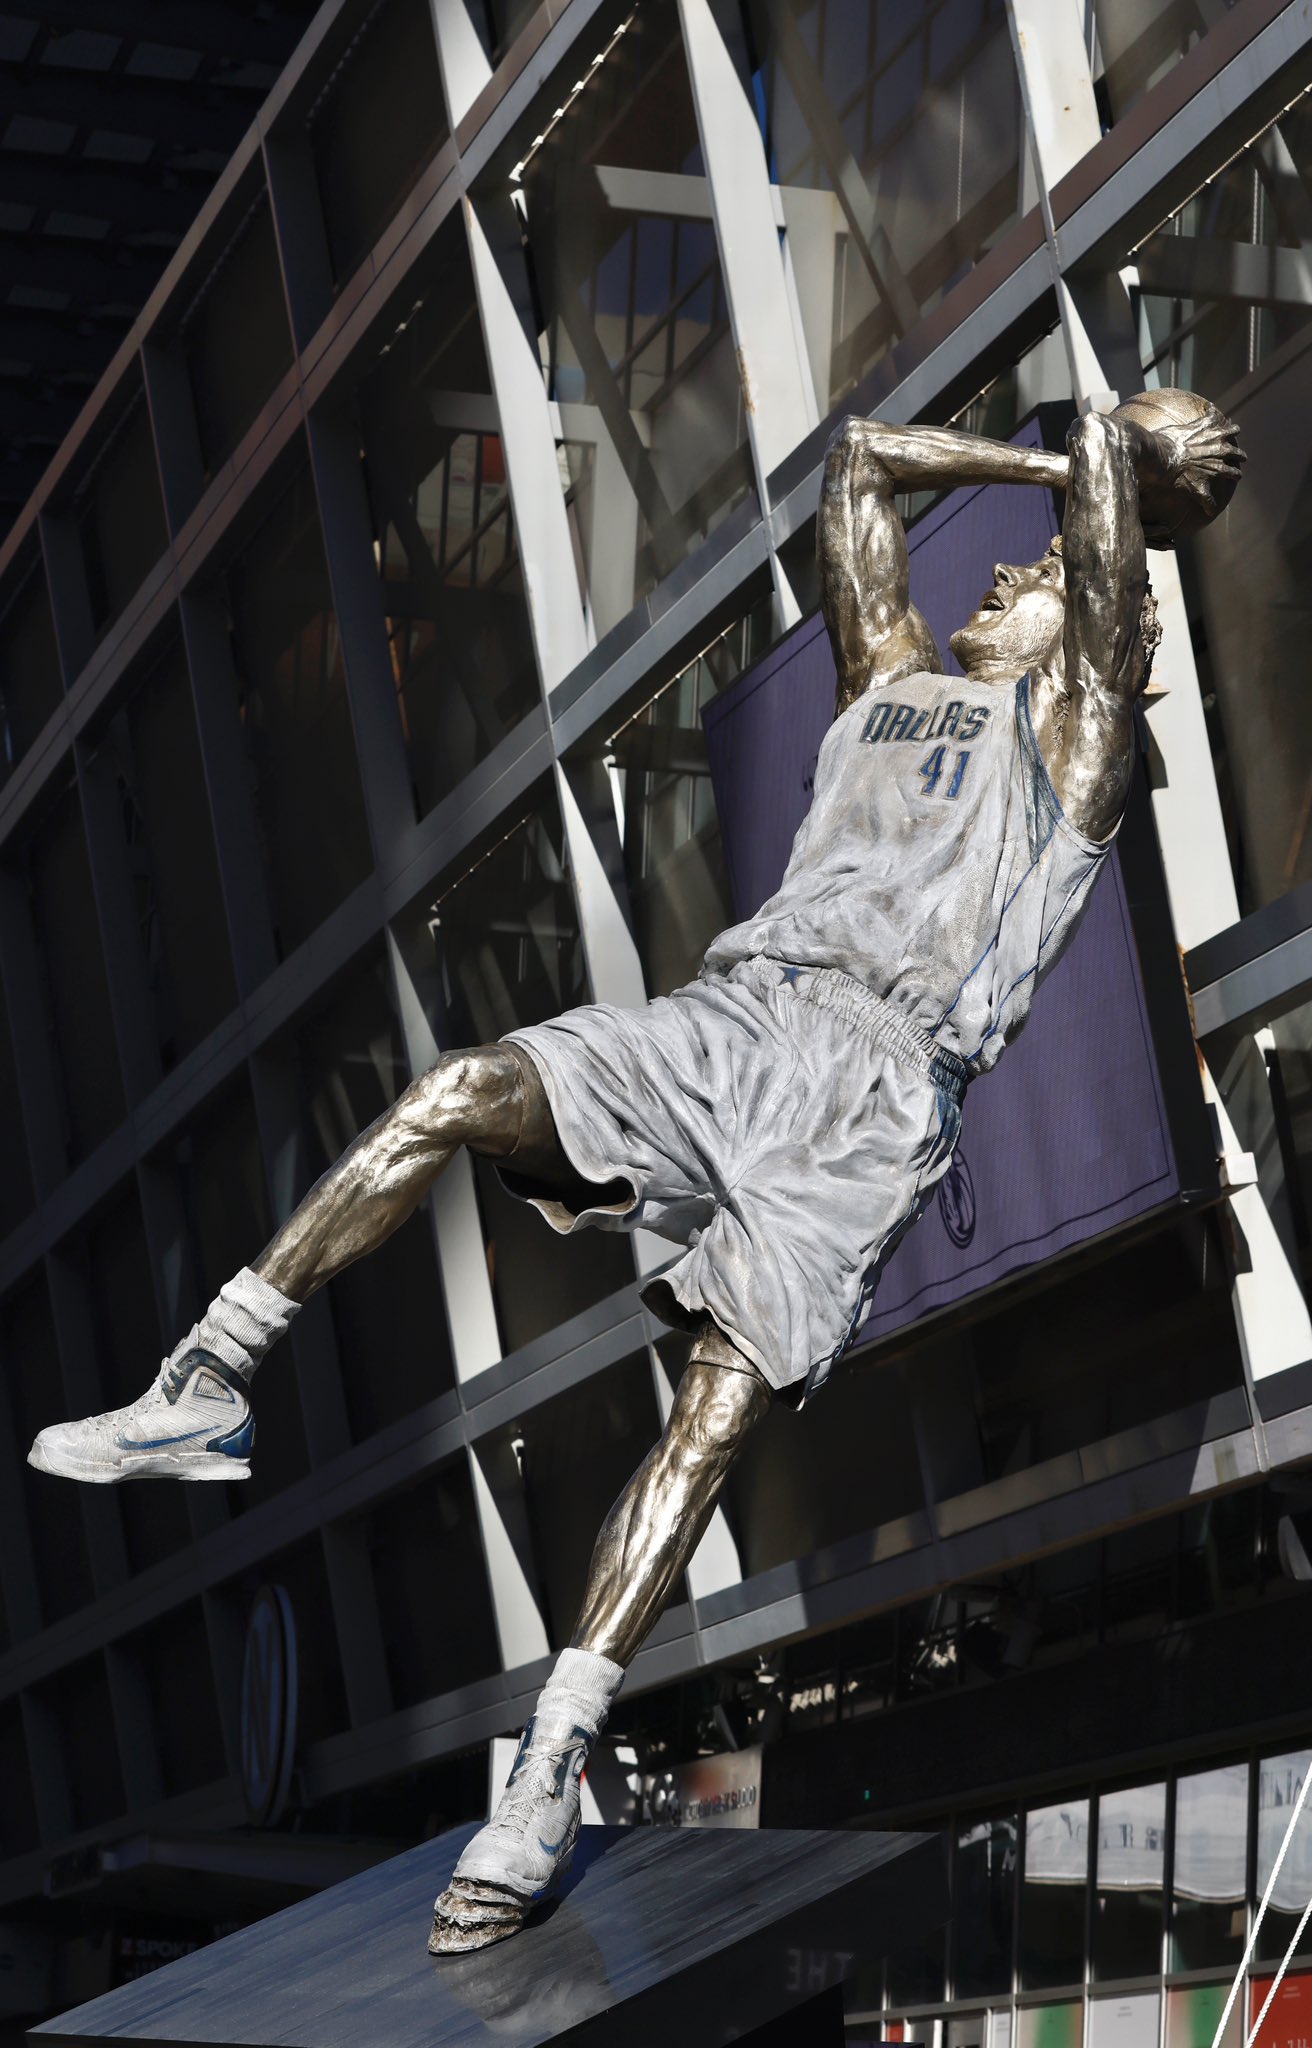 值得一提的是,雕像上的球鞋是诺维茨基在2011年总决赛所穿的hyperdunk